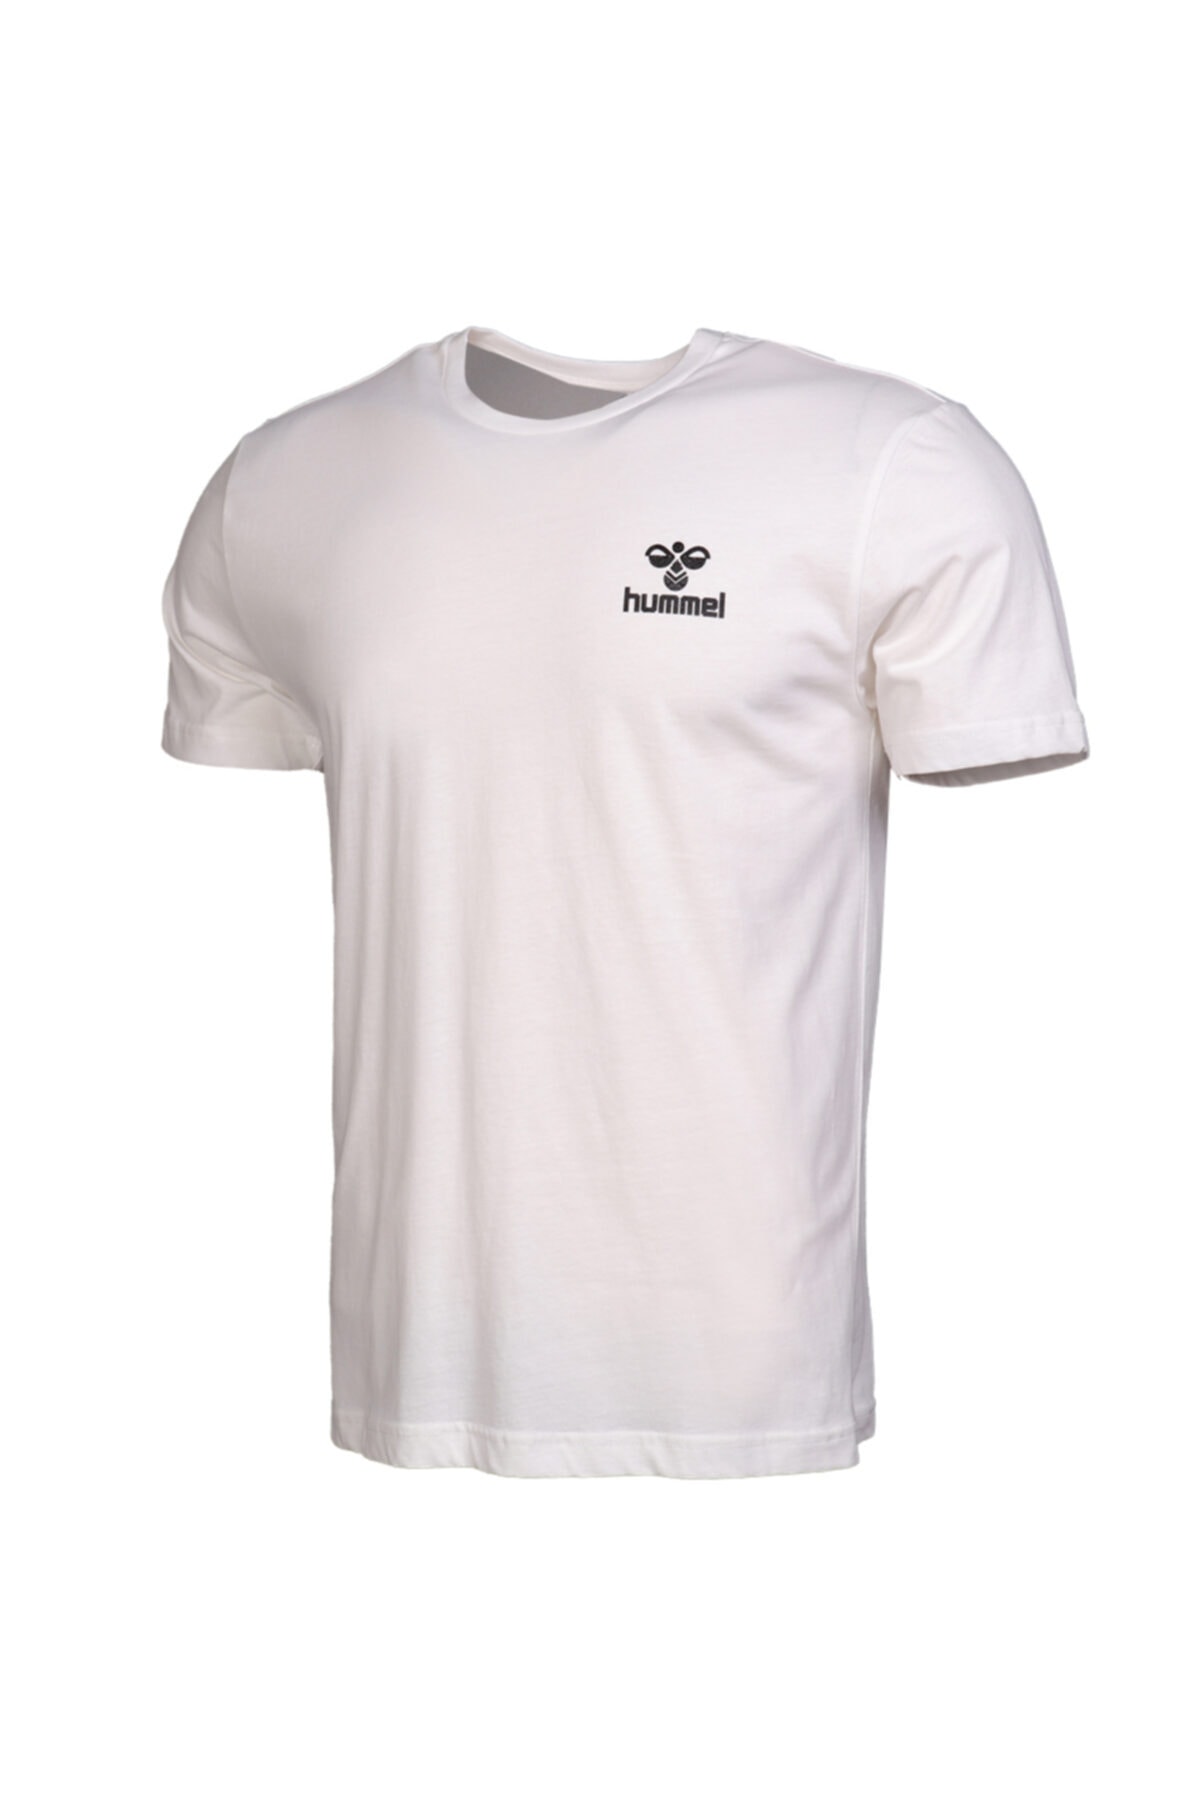 HUMMEL Sport T-Shirt - Weiß - Regular Fit